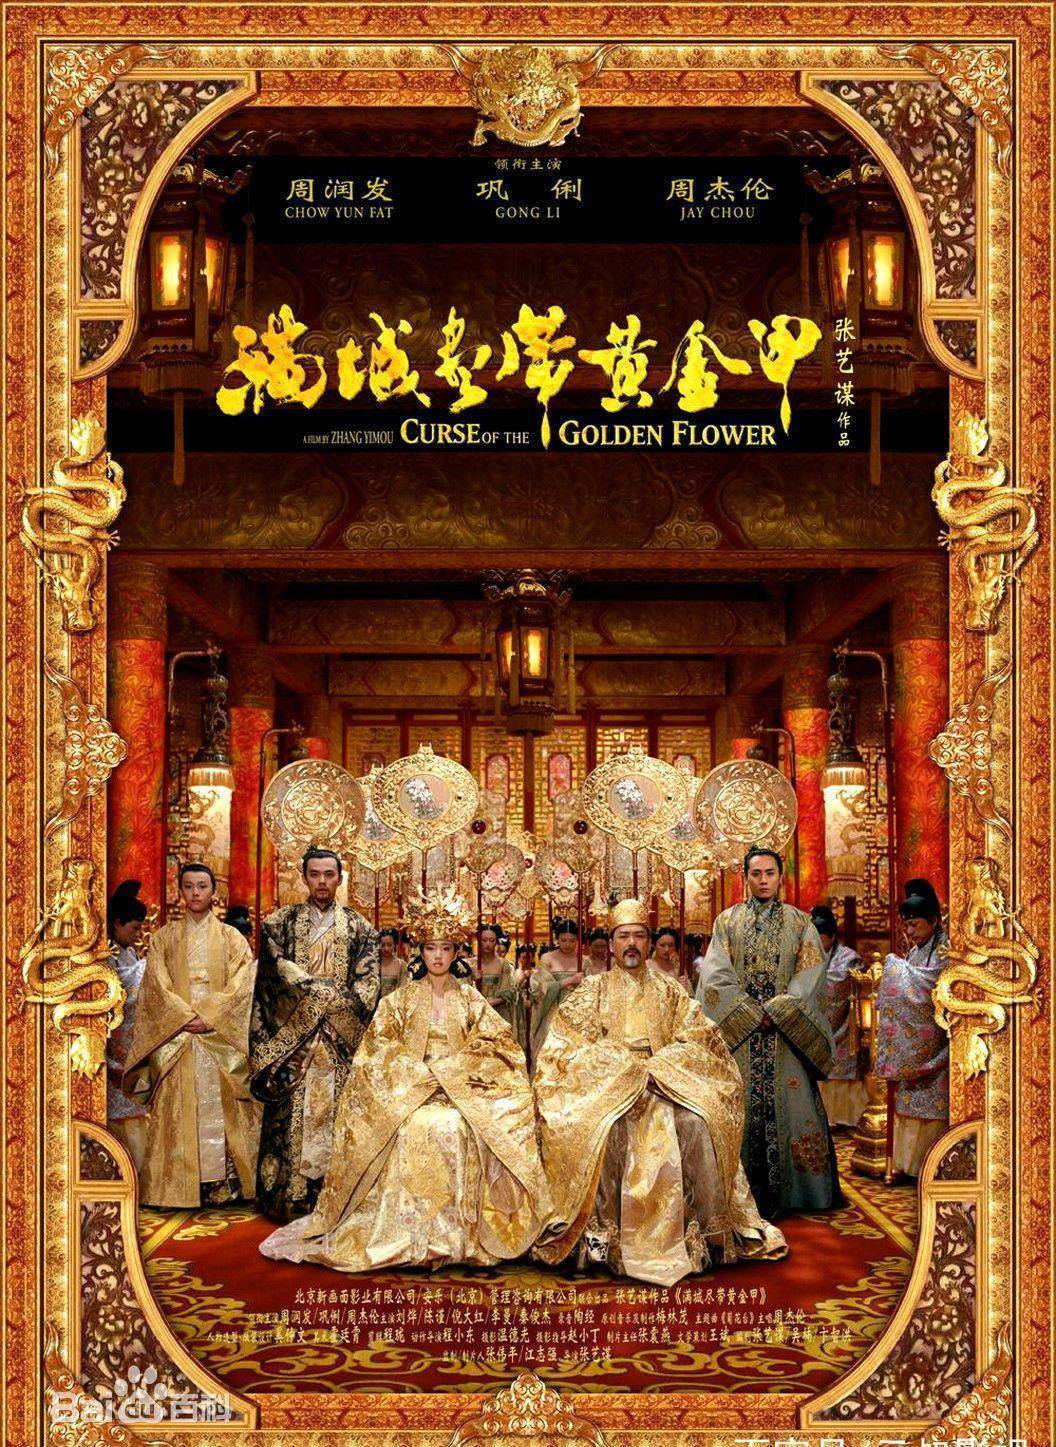 30年16部华语经典曾入选时代周刊世界十佳影片，你确定都看过吗？